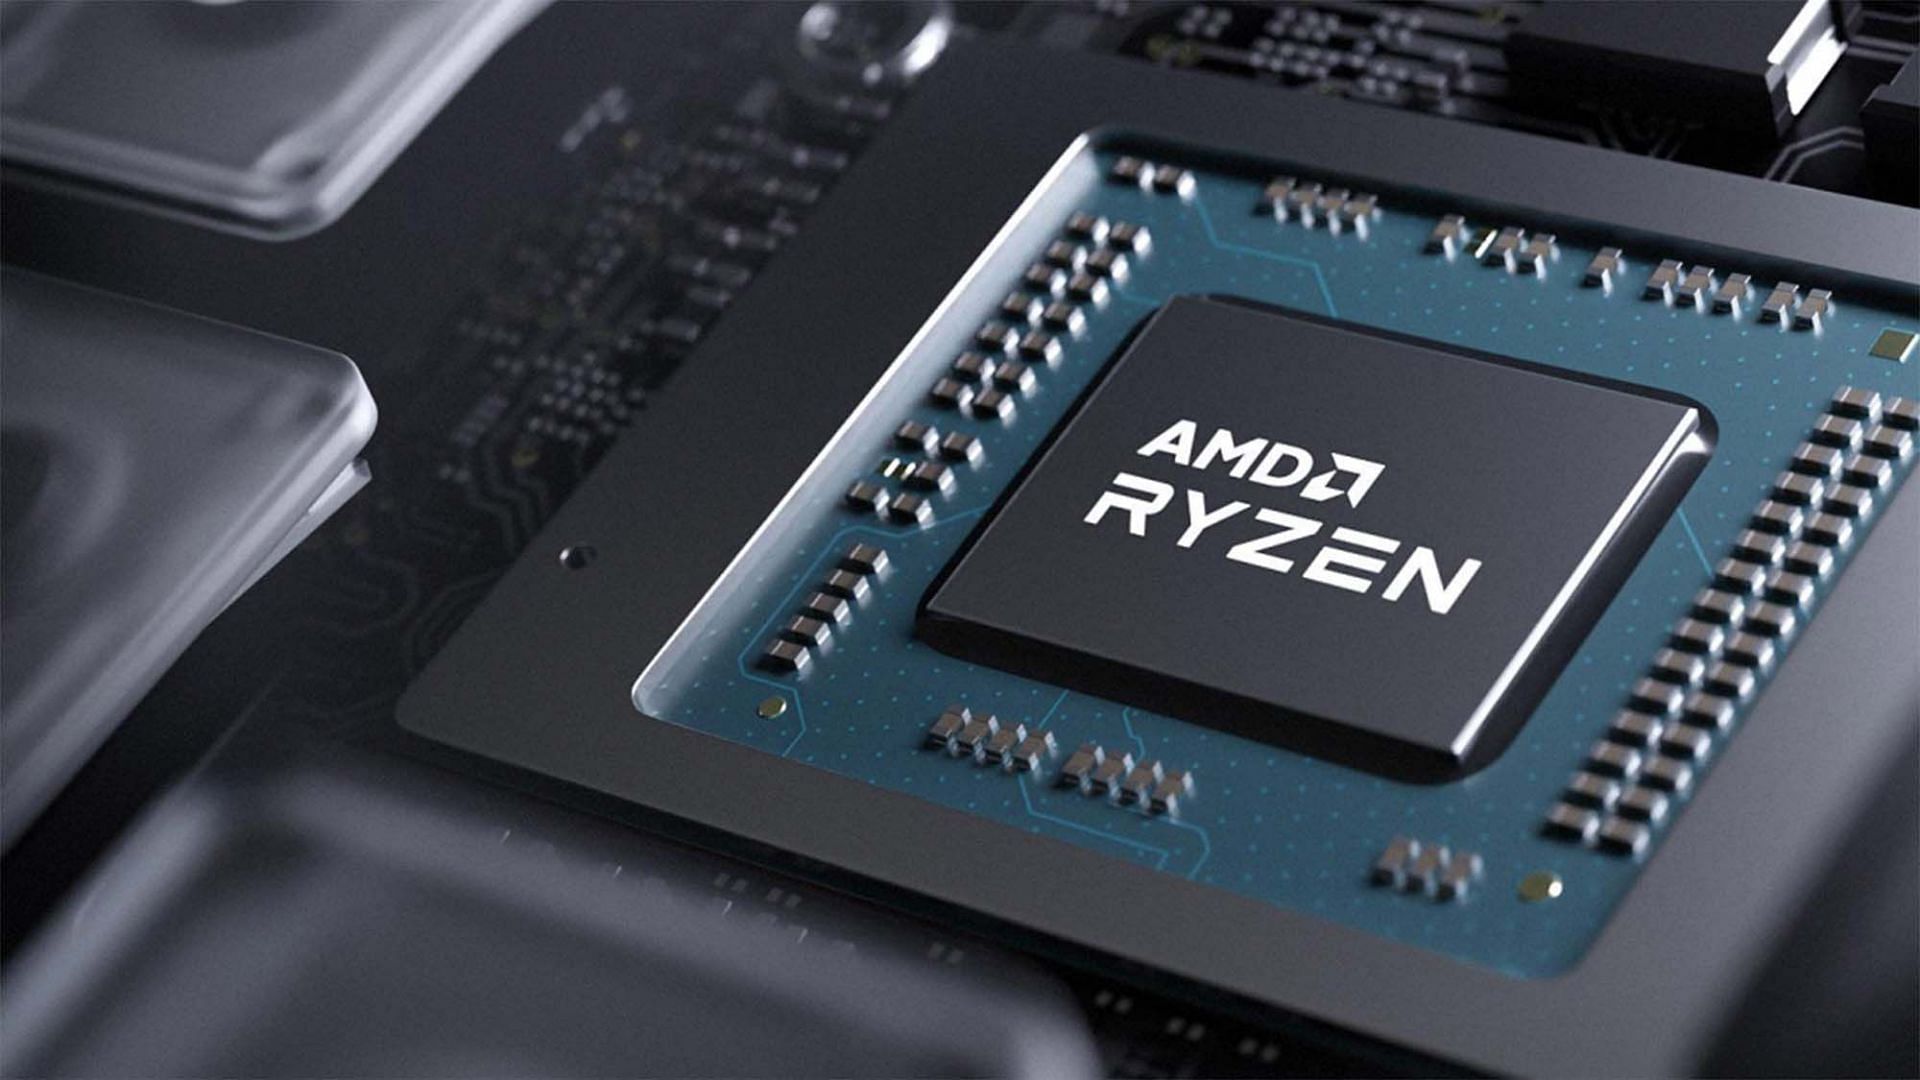 Both AMD and Intel have incredible gaming CPUs (Image via AMD)